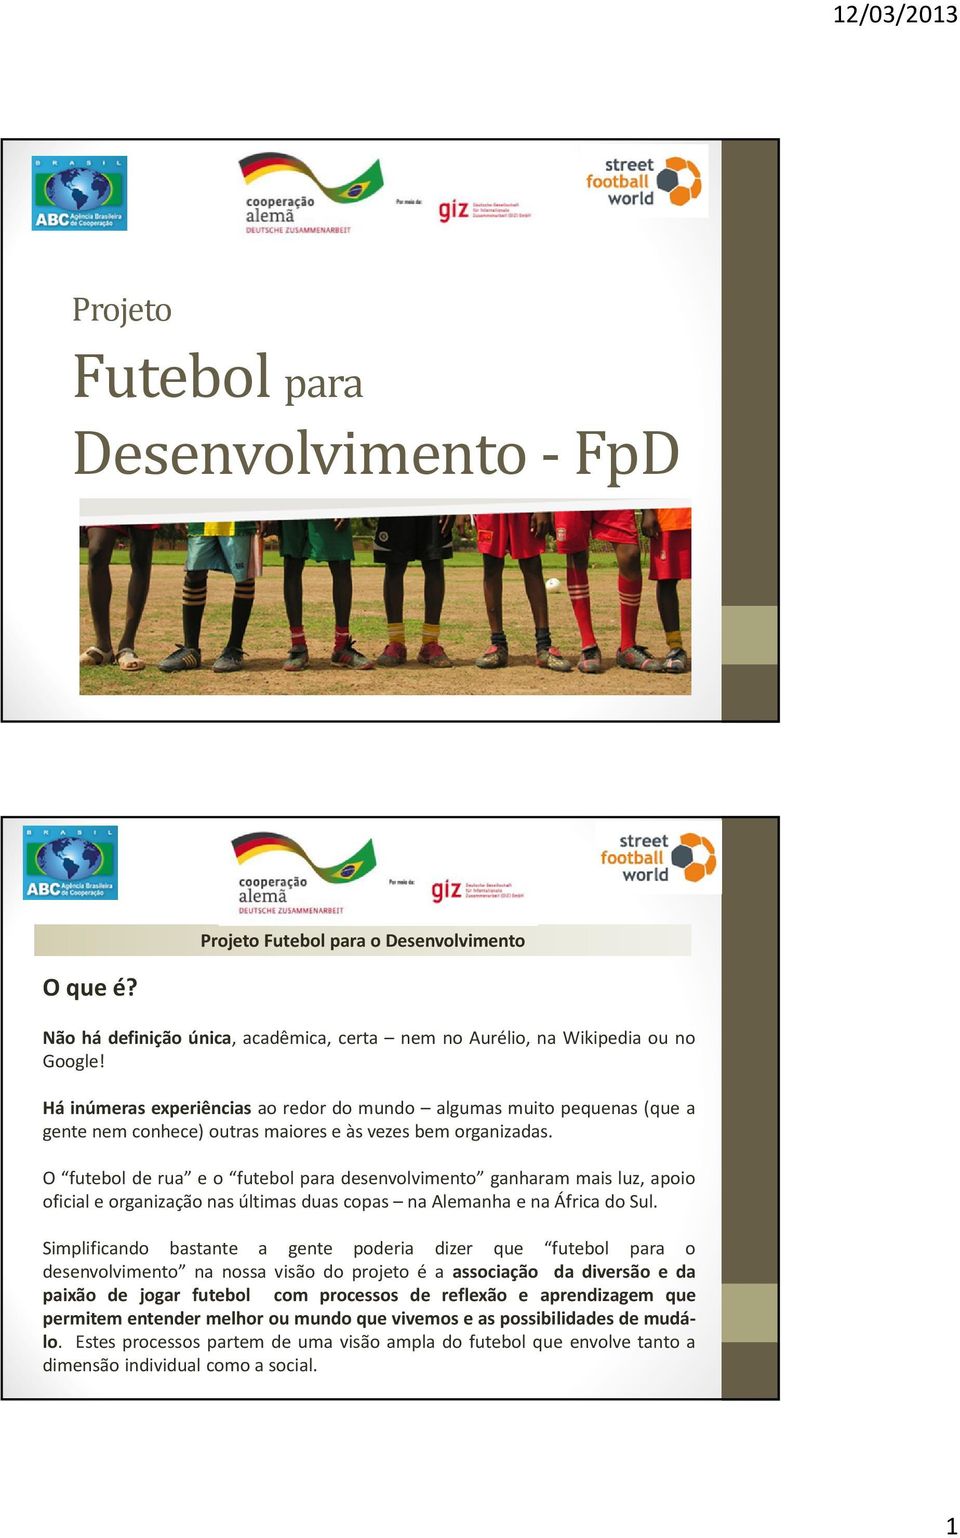 O futebol de rua e o futebol para desenvolvimento ganharam mais luz, apoio oficialeorganizaçãonasúltimasduascopas naalemanha enaáfricadosul.